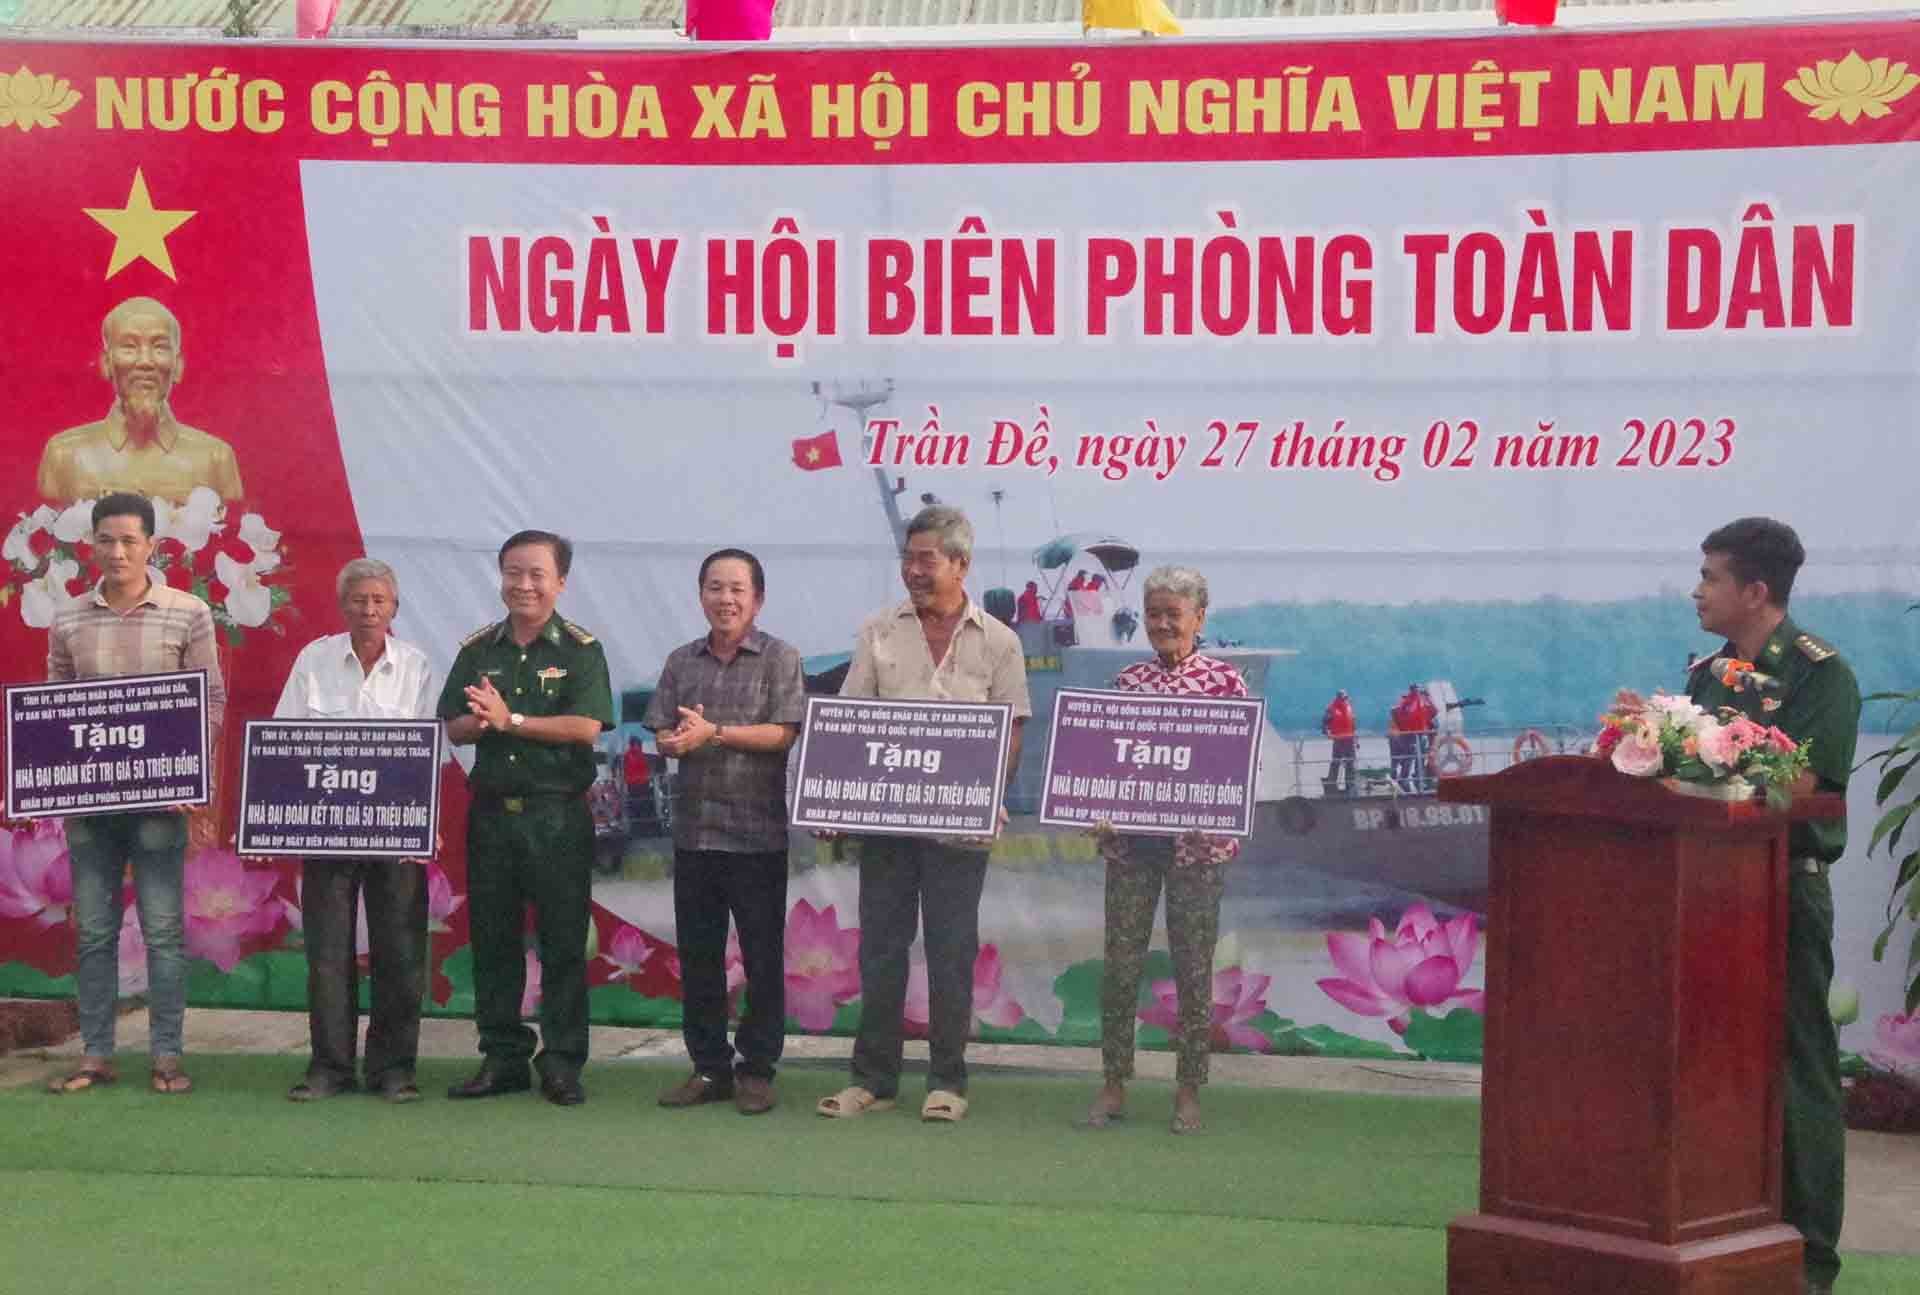 Lãnh đạo Bộ đội biên phòng tỉnh và Ủy ban nhân dân huyện Trần Đề trao bảng tượng trưng tặng nhà Đại đoàn kết cho người nghèo khu vực biên giới biển huyện Trần Đề.